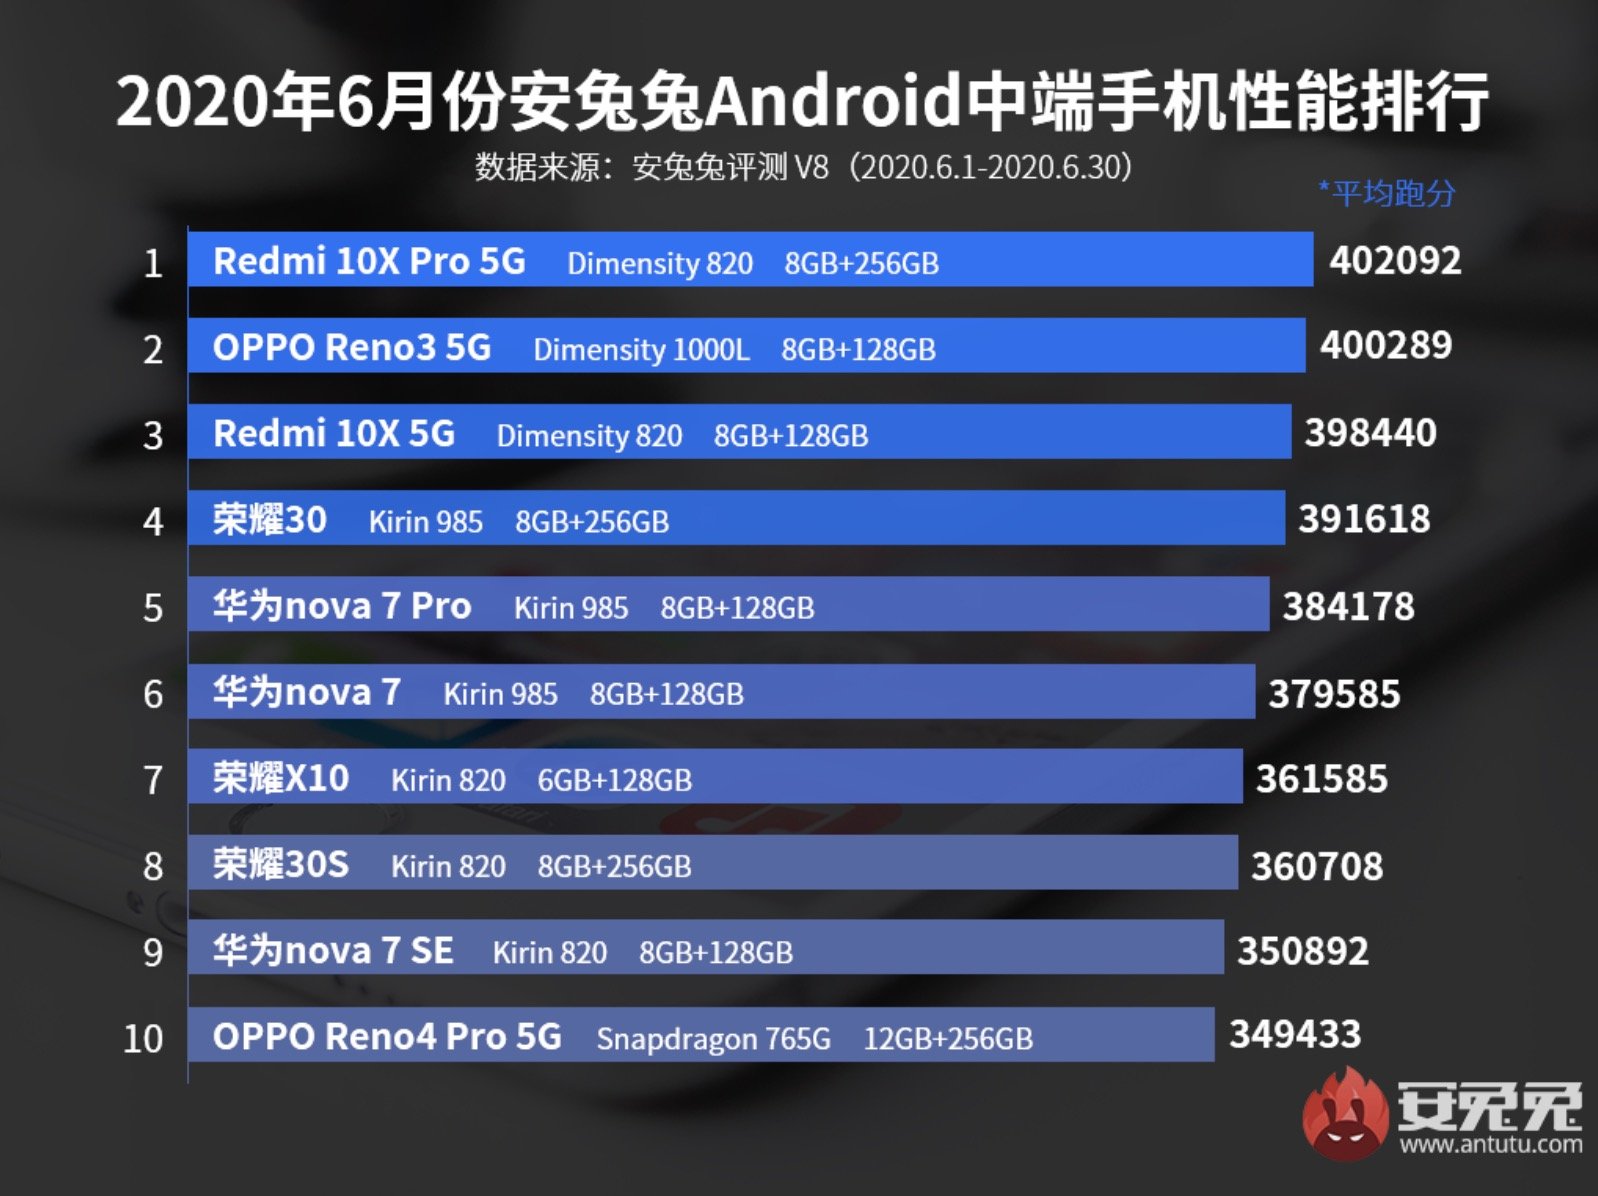 Lista de smartphones Android intermediários mais potentes de junho no AnTuTu.